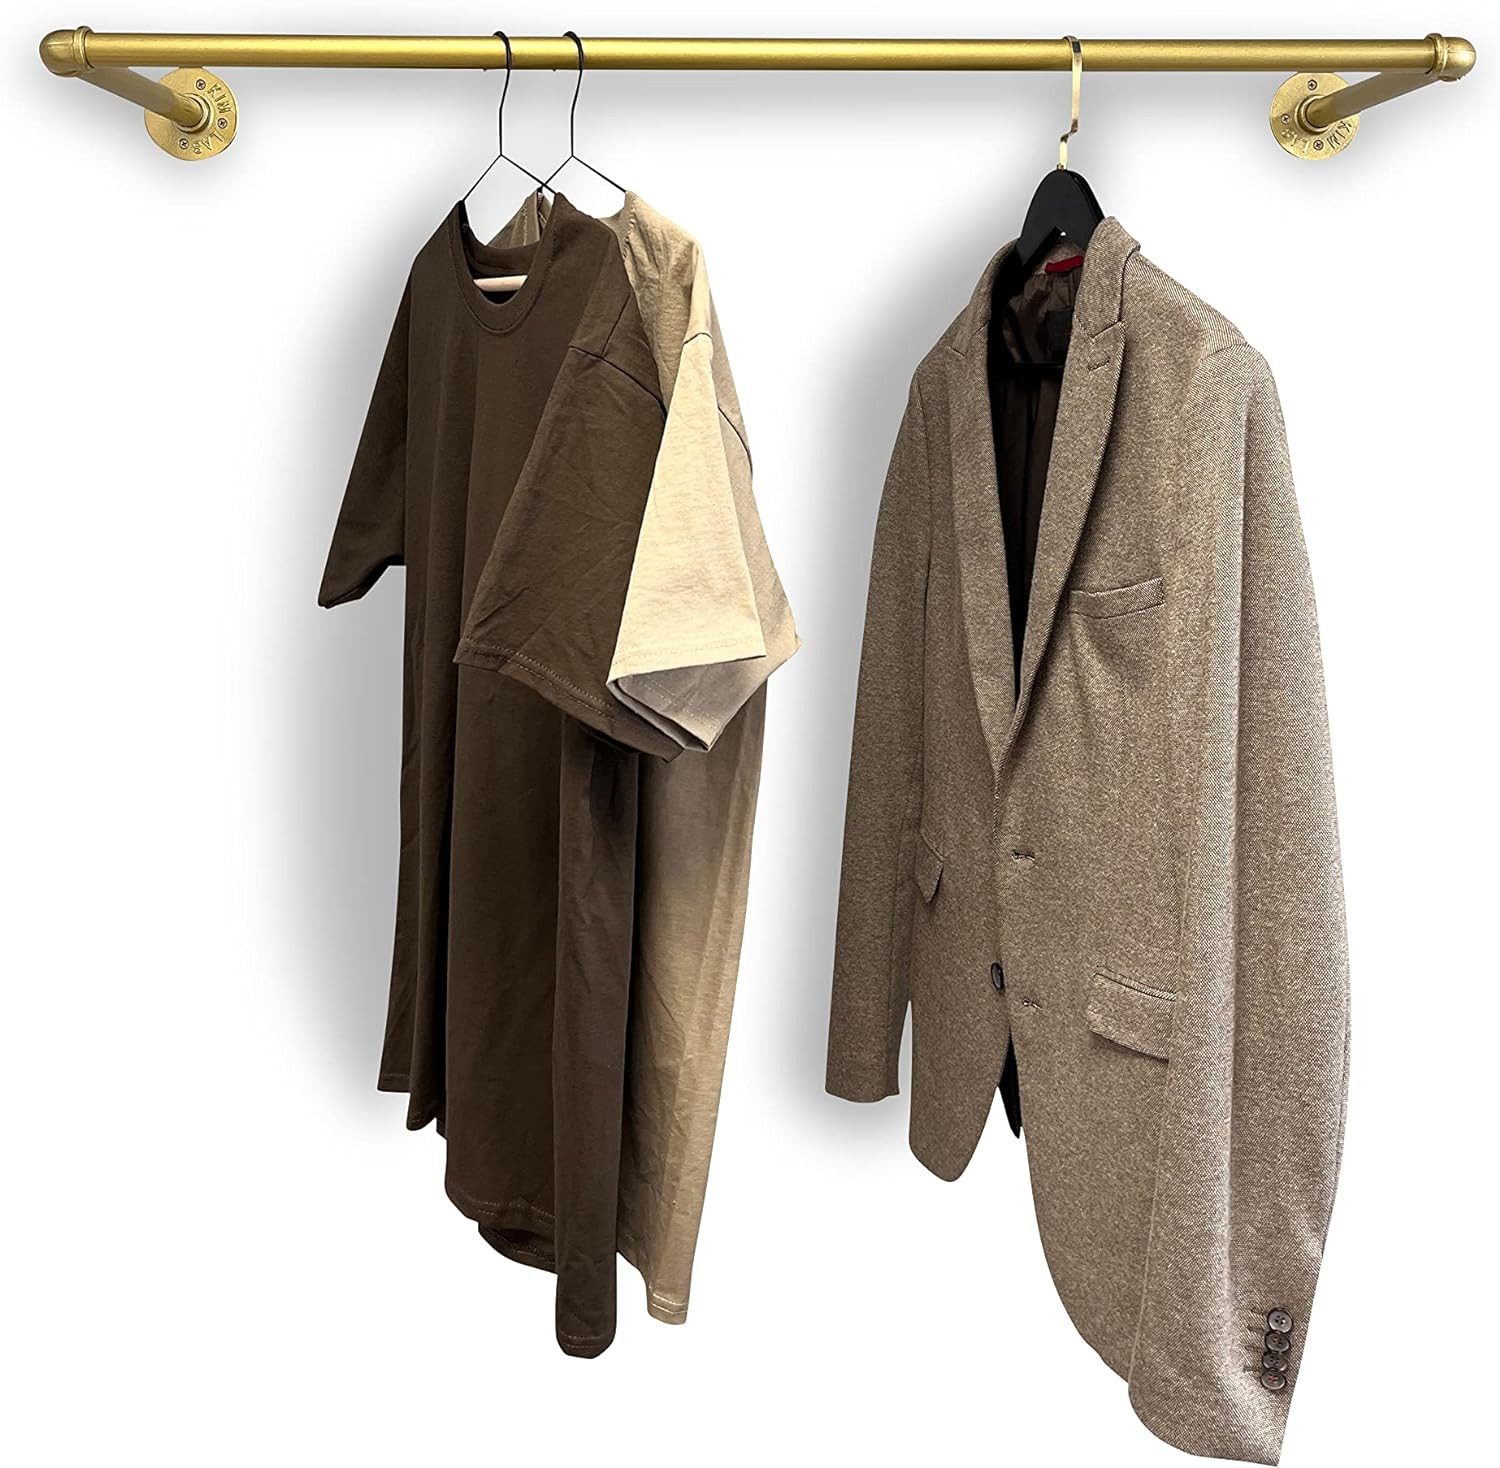 RSR Hangers Kleiderstange Garderobe Industrial Design Gold für Wand Wandmontage Garderobenstange